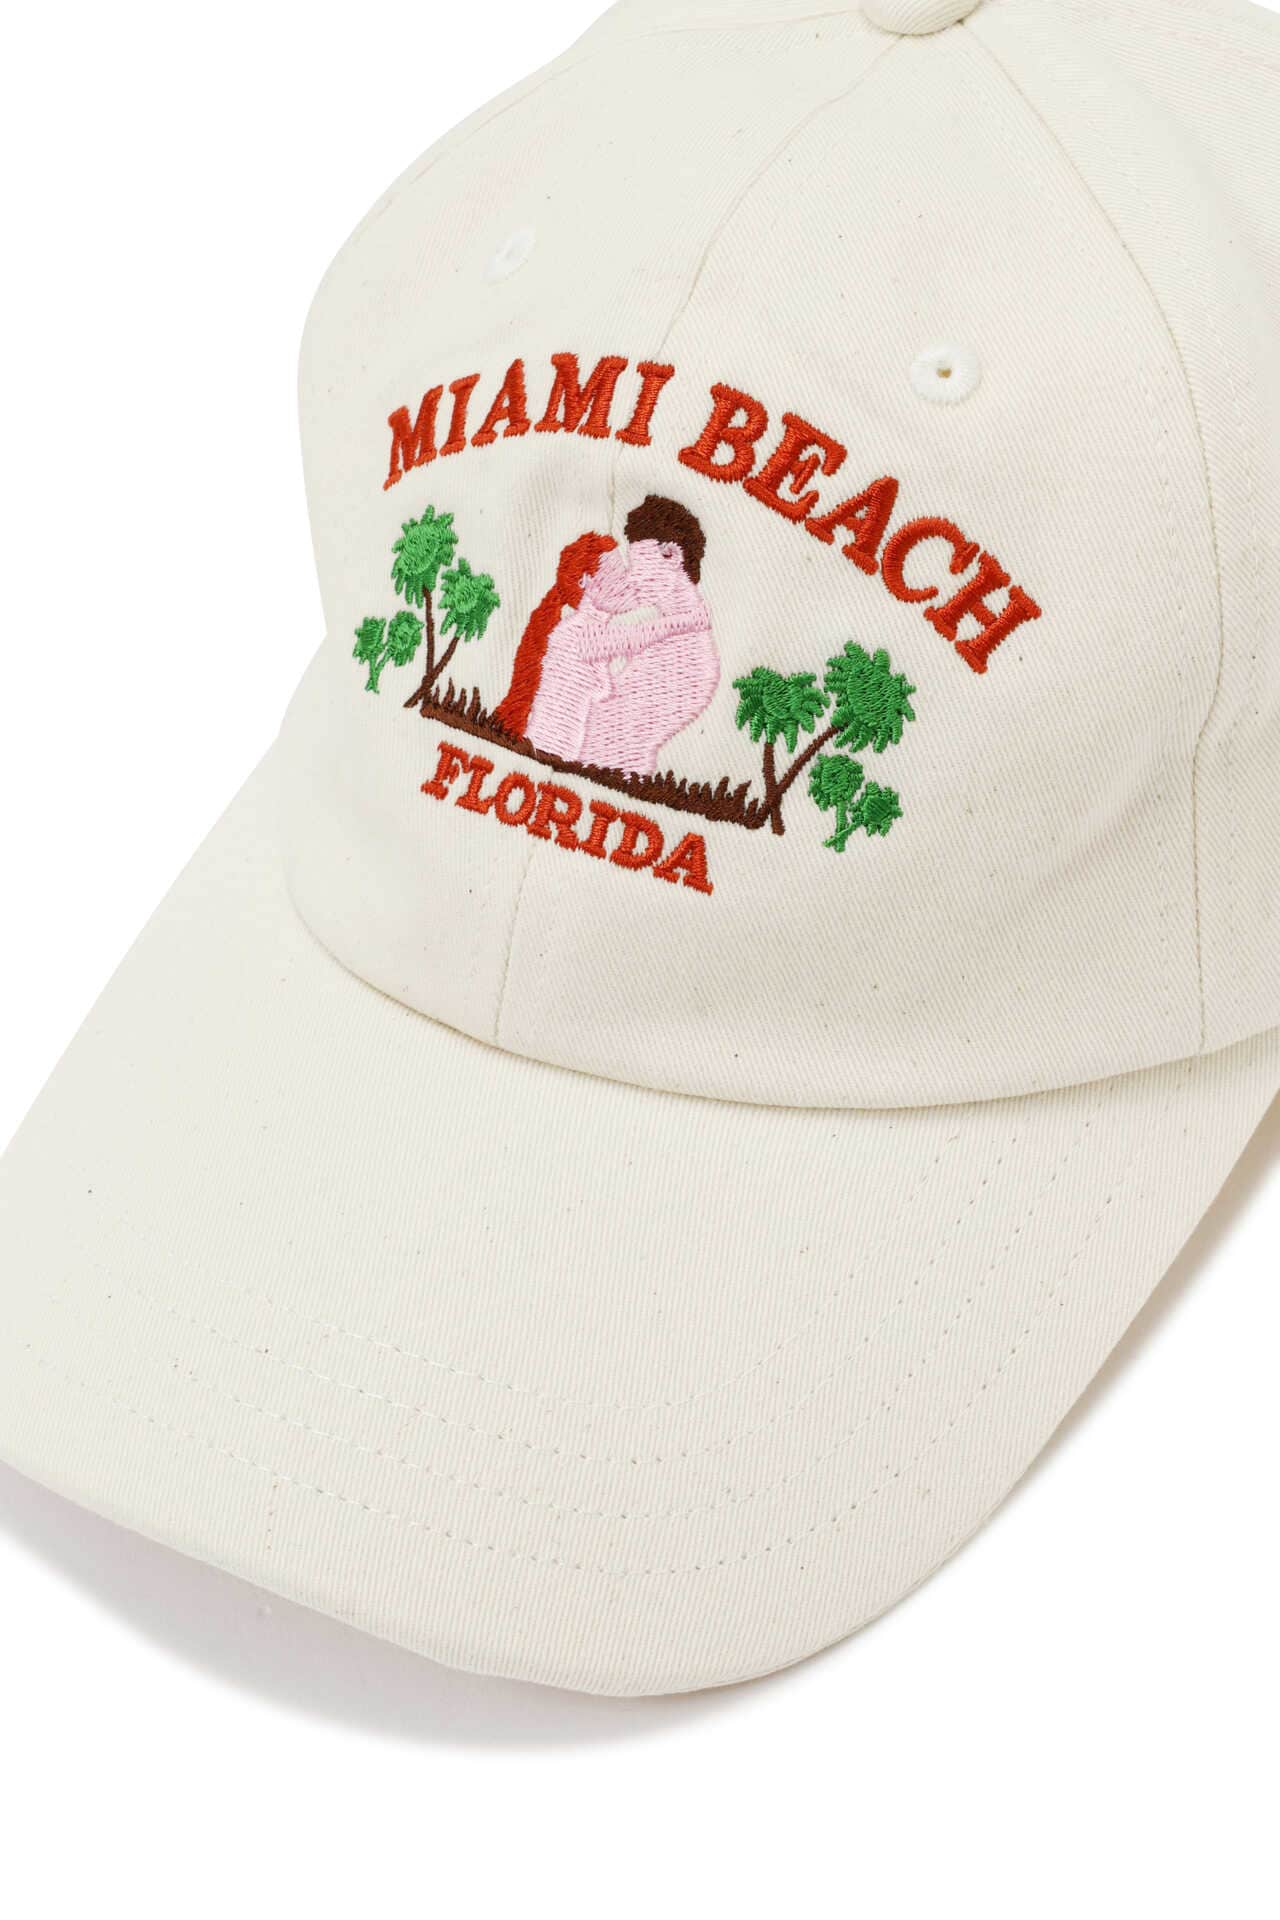 マイアミビーチ刺繍キャップ